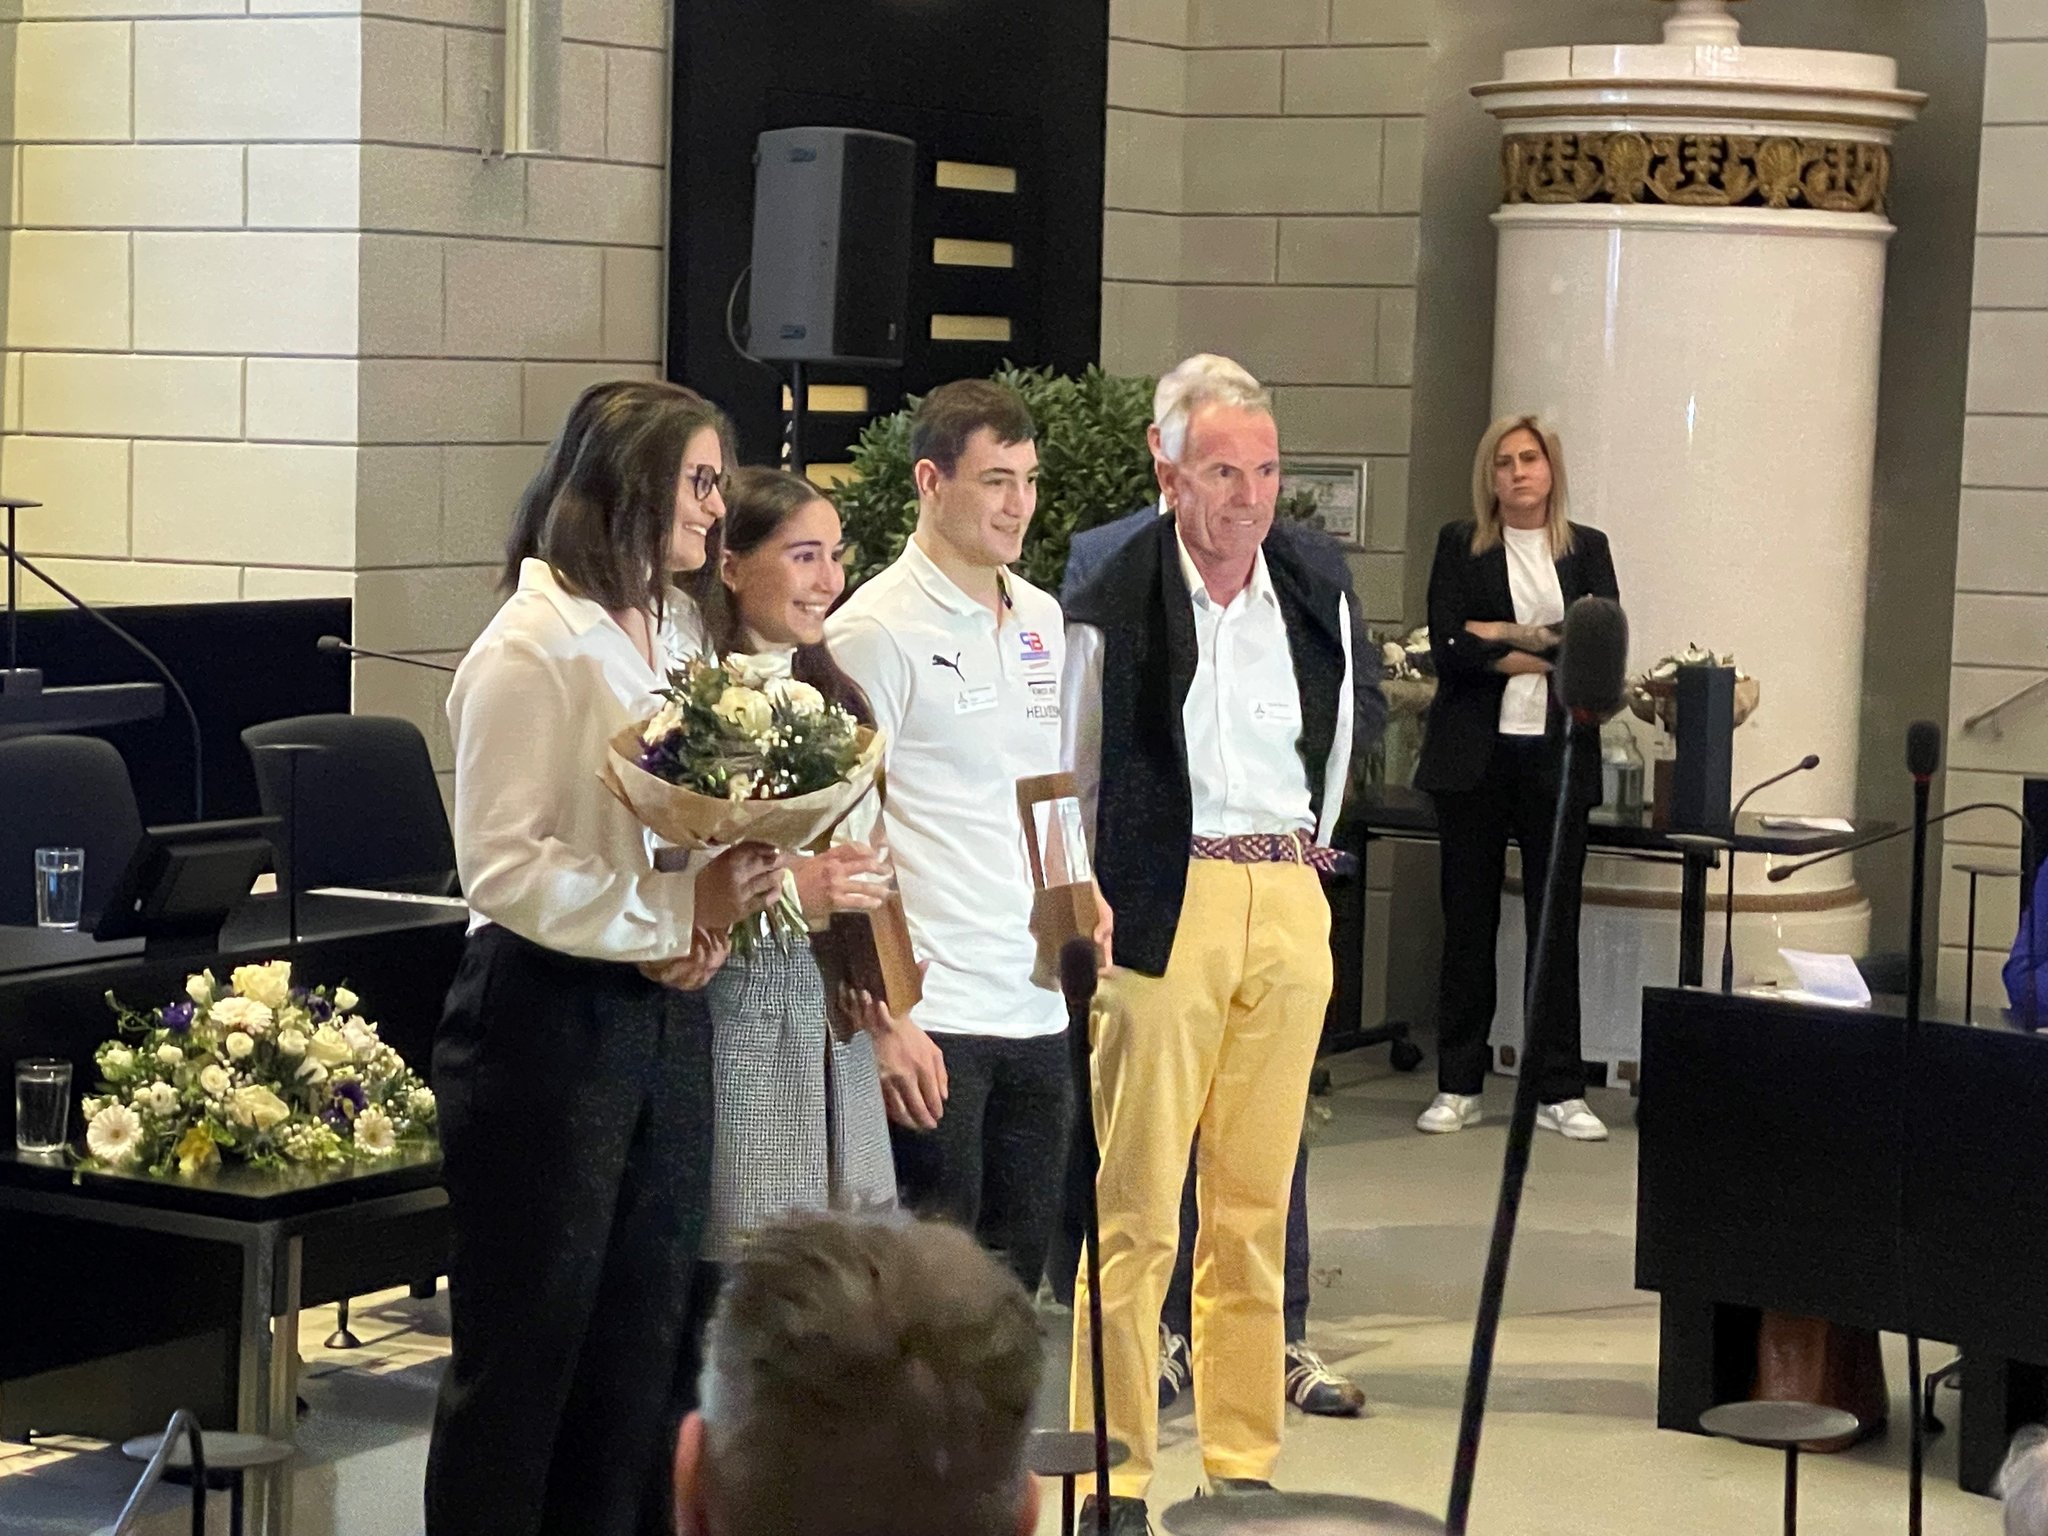 Bei der Preisübergabe am 28. Februar im Kantonsratssaal in Luzern (von links nach rechts: Seraina Stirnimann, Flurina Parrillo, Michael Portmann (2. Platz))